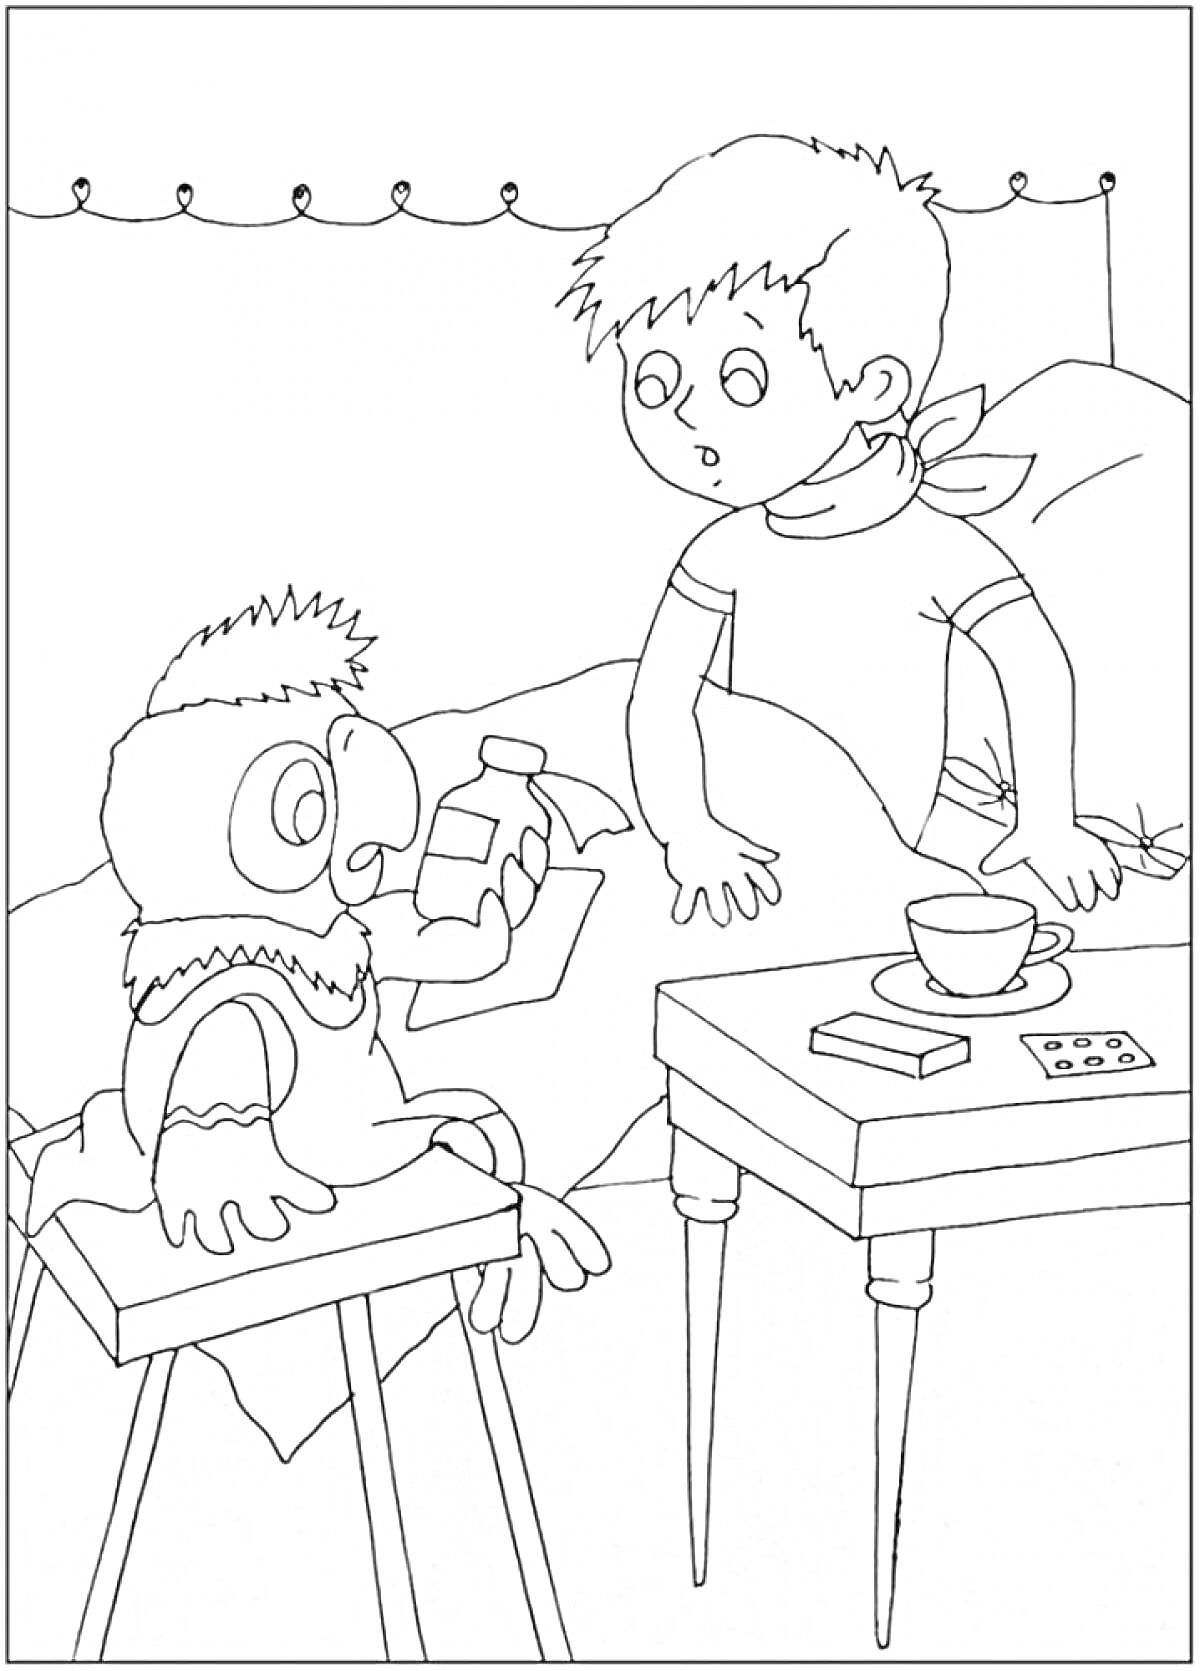 Раскраска Попугай Кеша и мальчик в комнате, попугай держит бутылочку с лекарством, рядом стоит стол с чашкой, коробочкой и пачкой таблеток